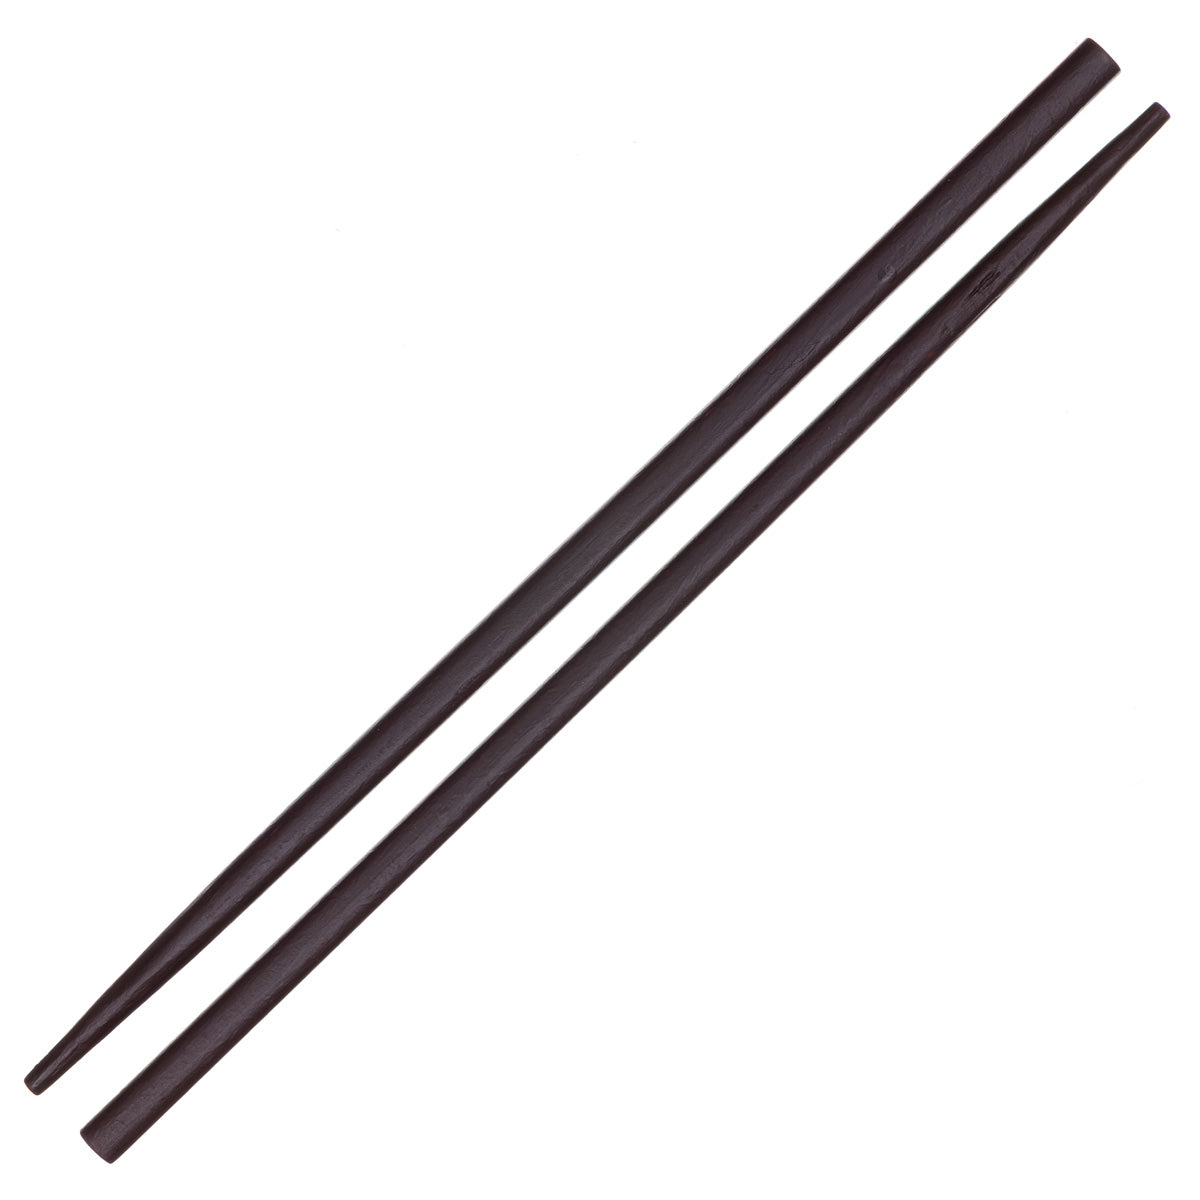 Tumma nutturapiikki bambusta 4,99€ | Ninja.fi